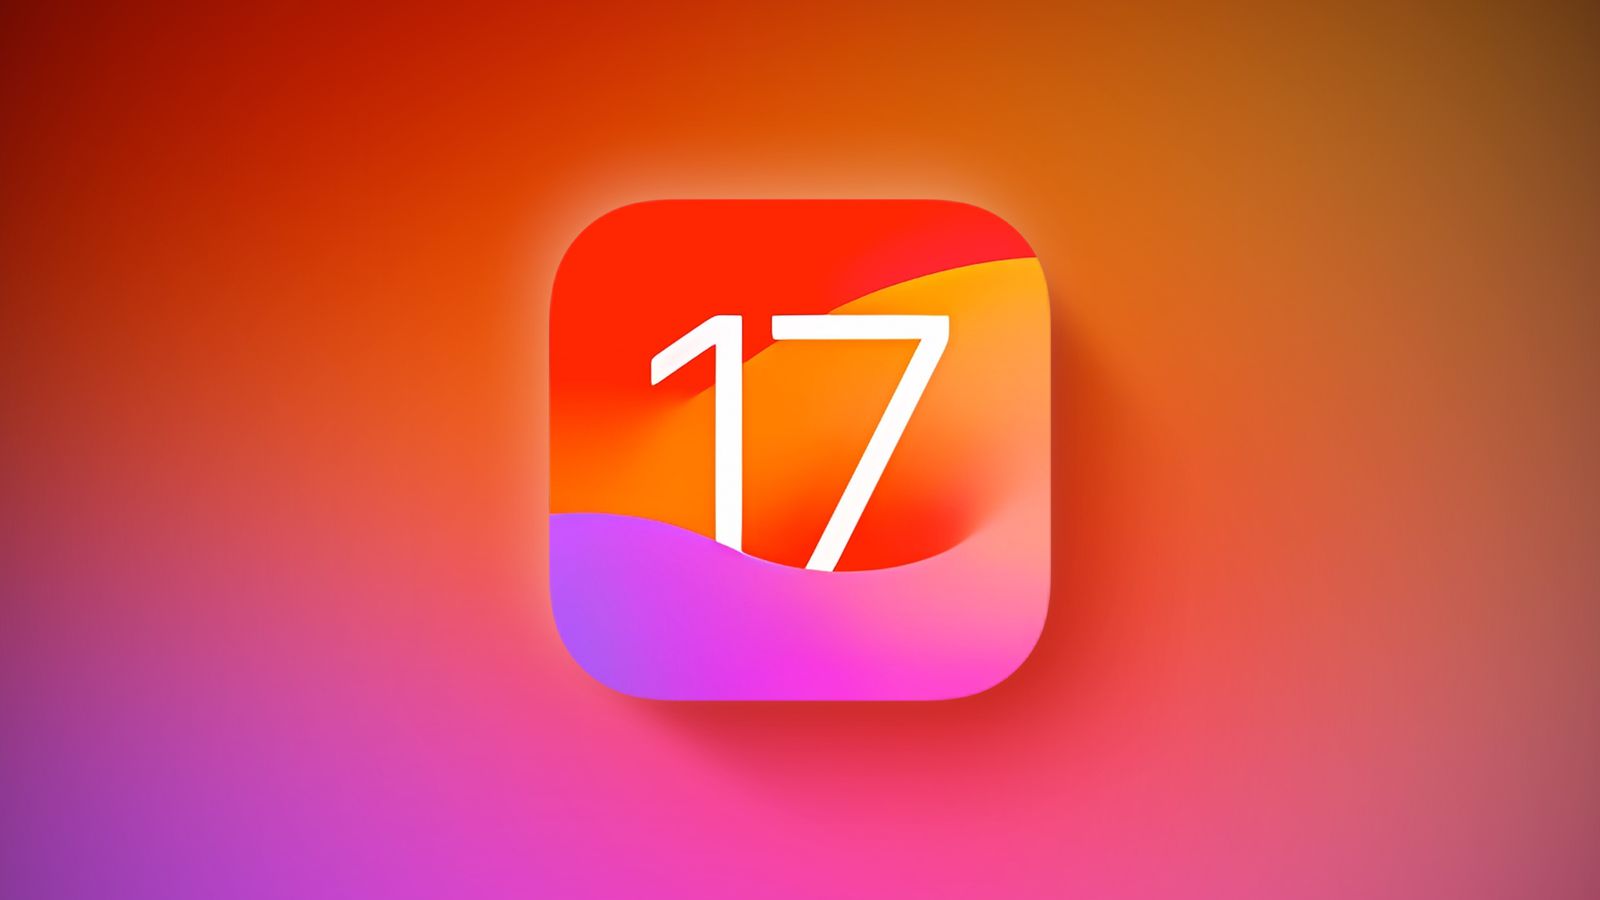 Вышла iOS 17 beta 5 для разработчиков